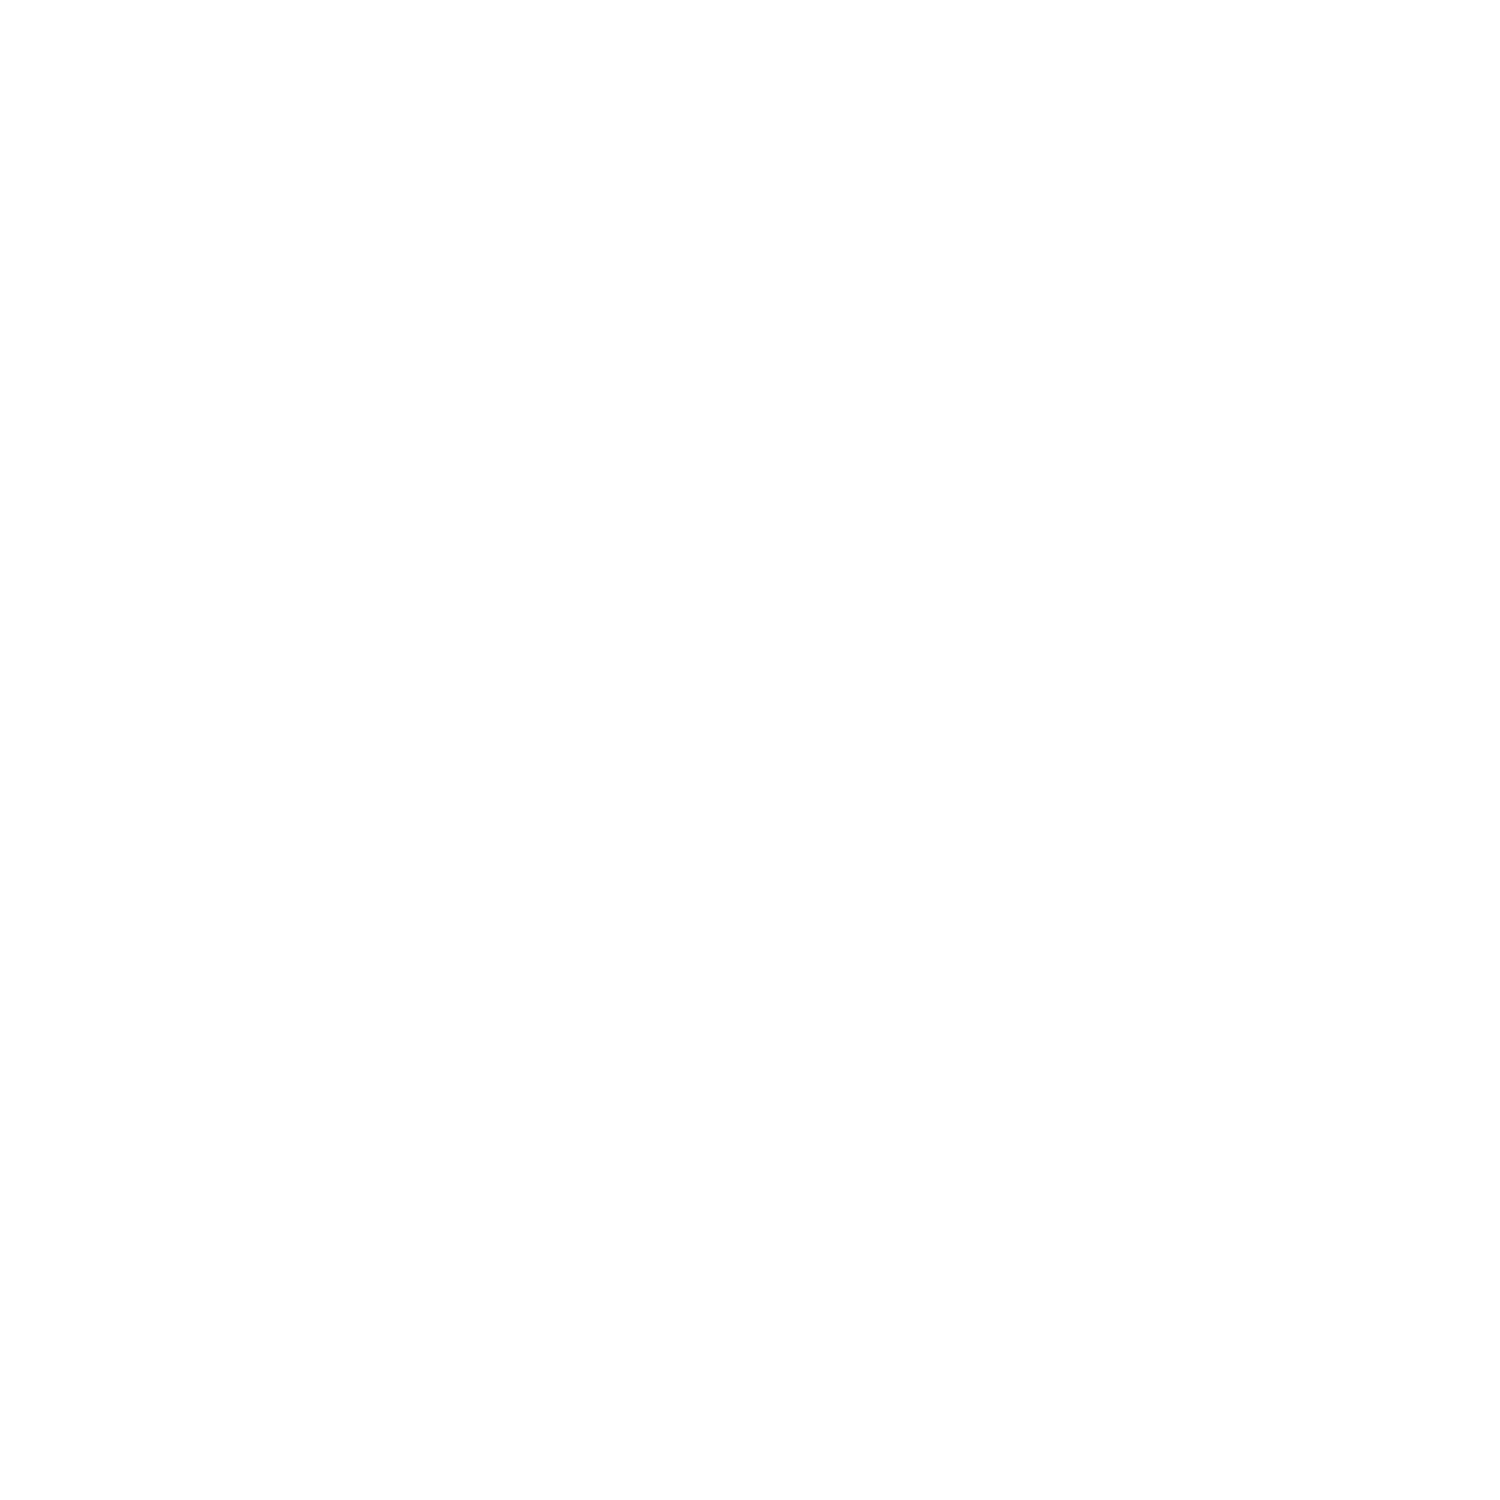 Apostle 'Que